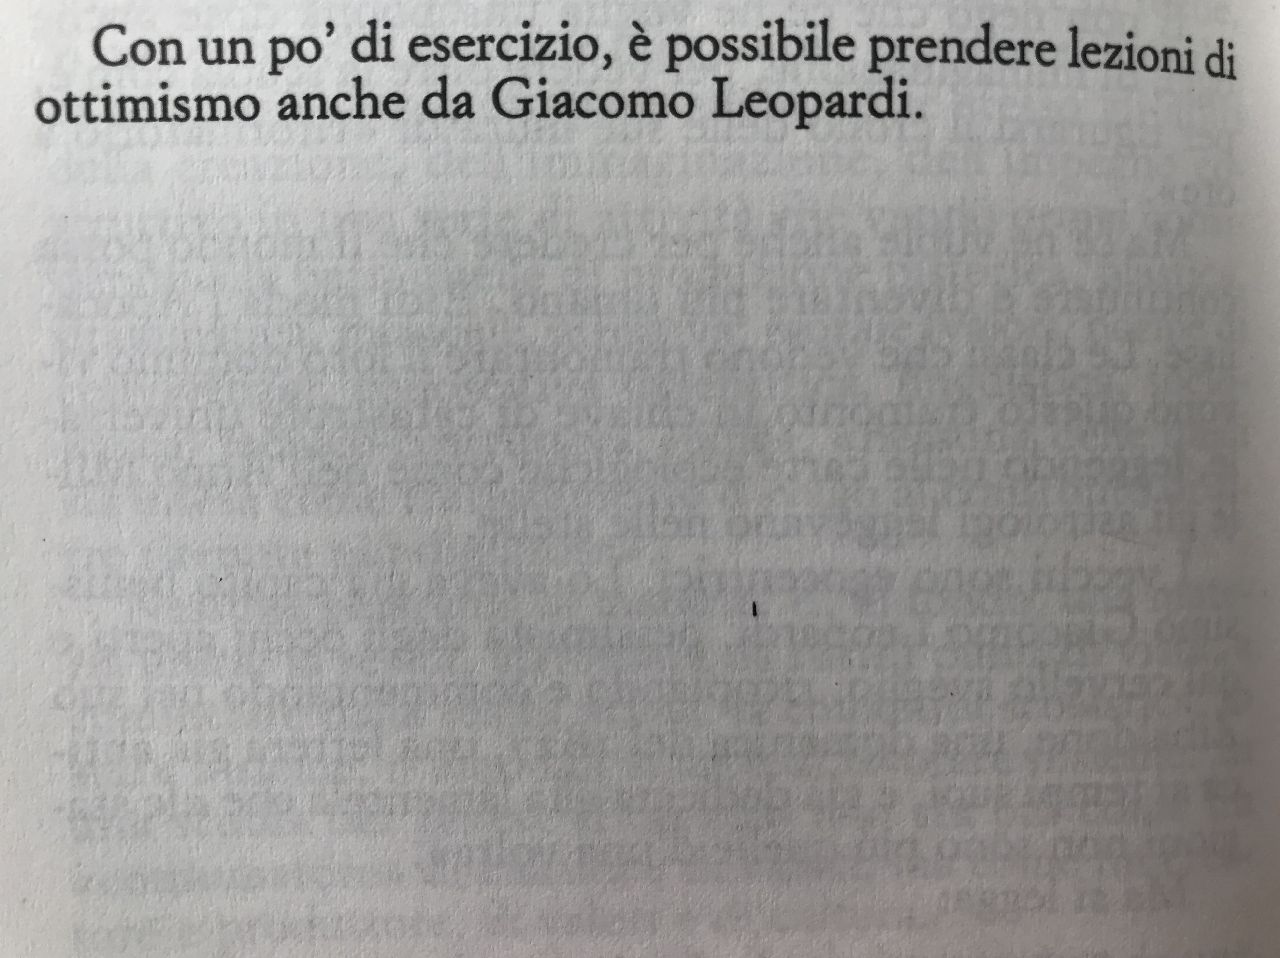 Gianni Rodari, Grammatica della fantasia, Einaudi